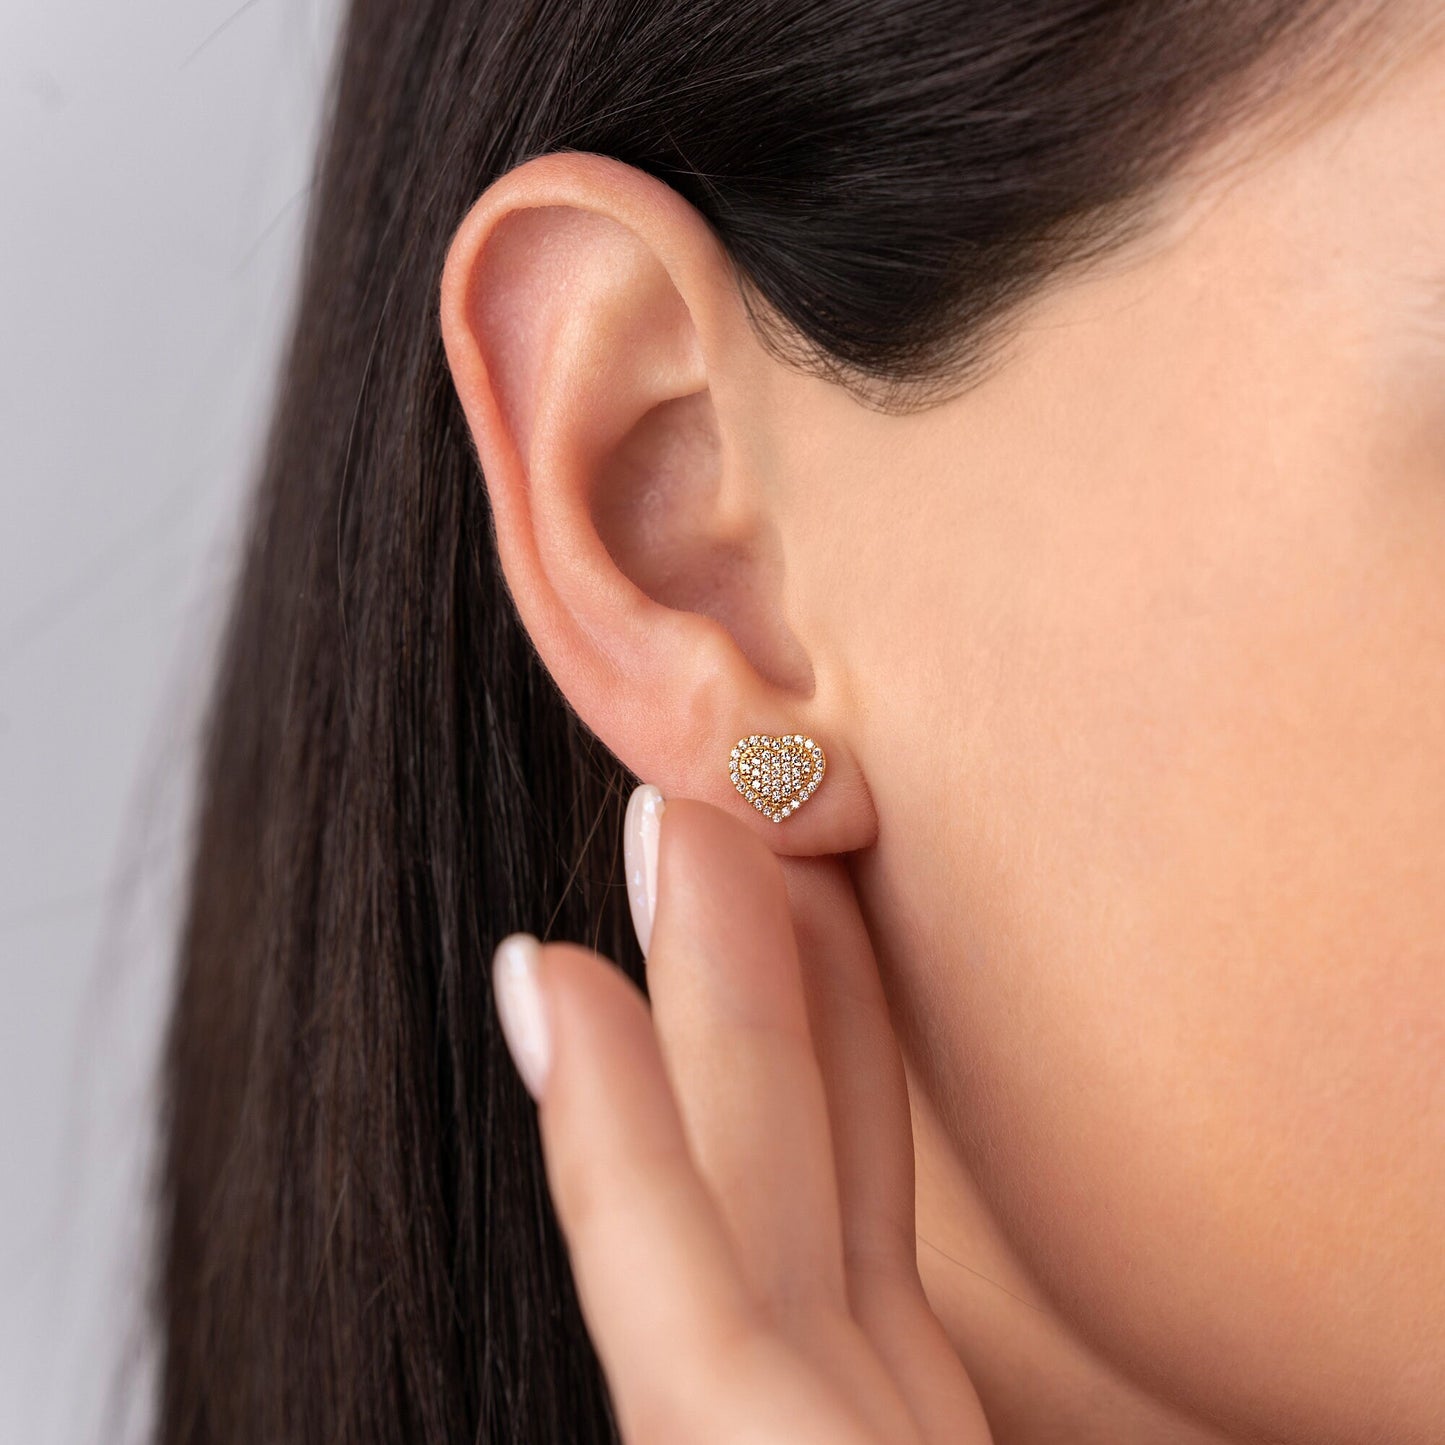 Heart Multi Stone Earrings